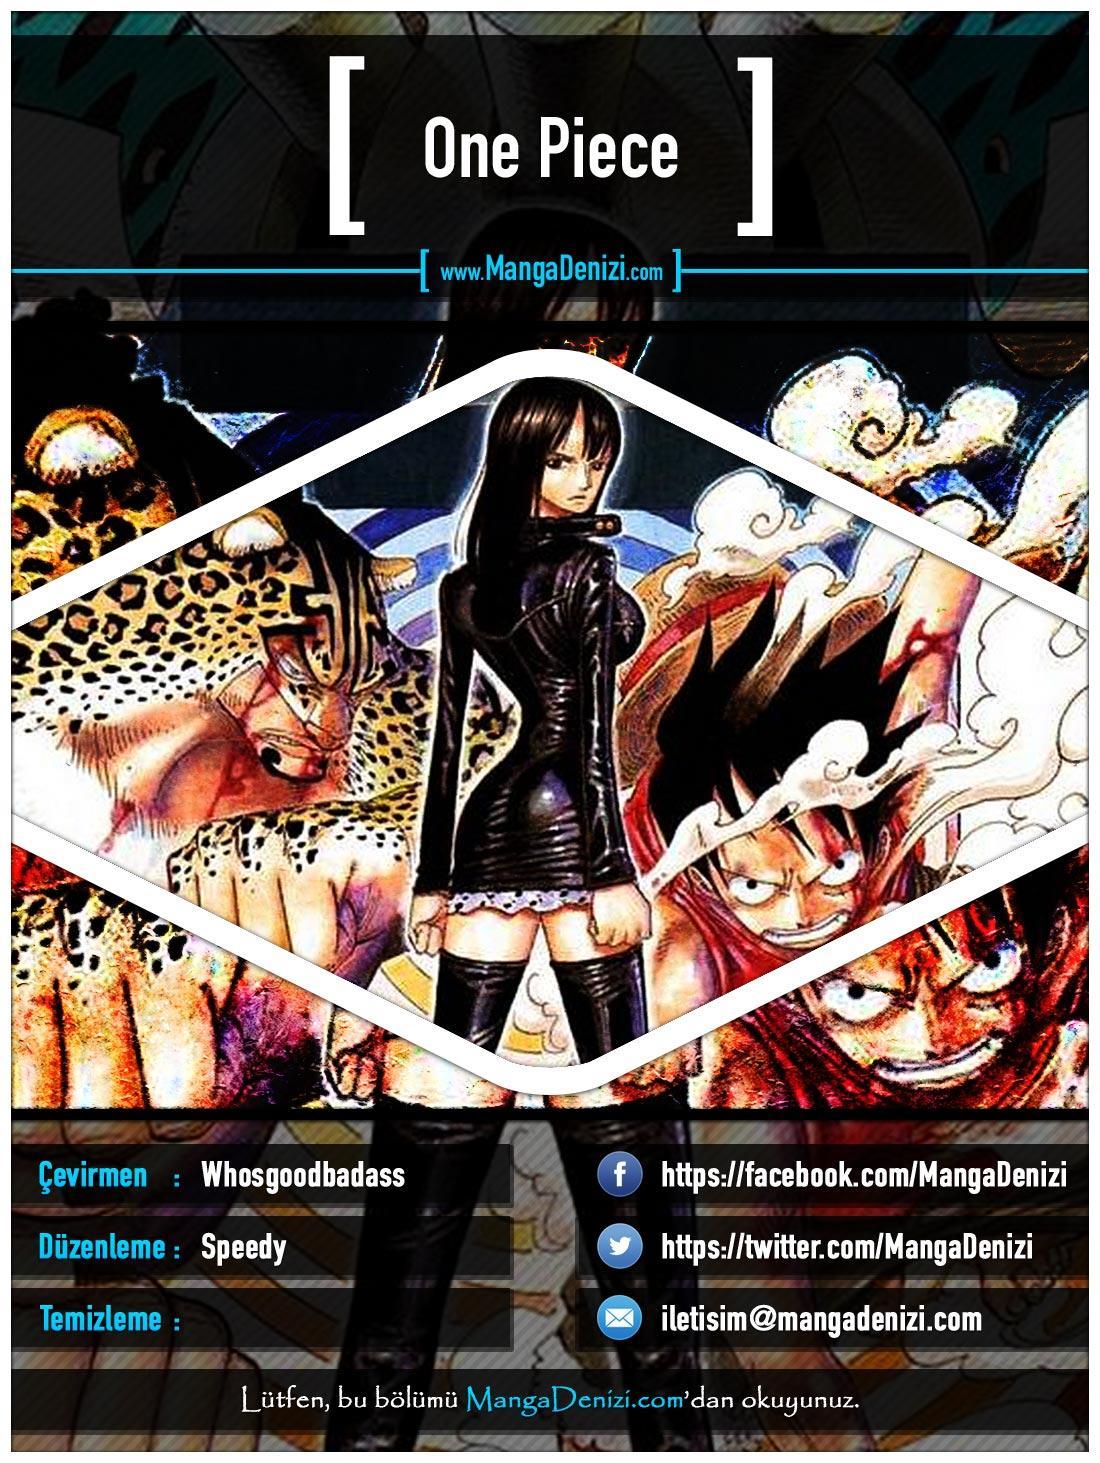 One Piece [Renkli] mangasının 0342 bölümünün 1. sayfasını okuyorsunuz.